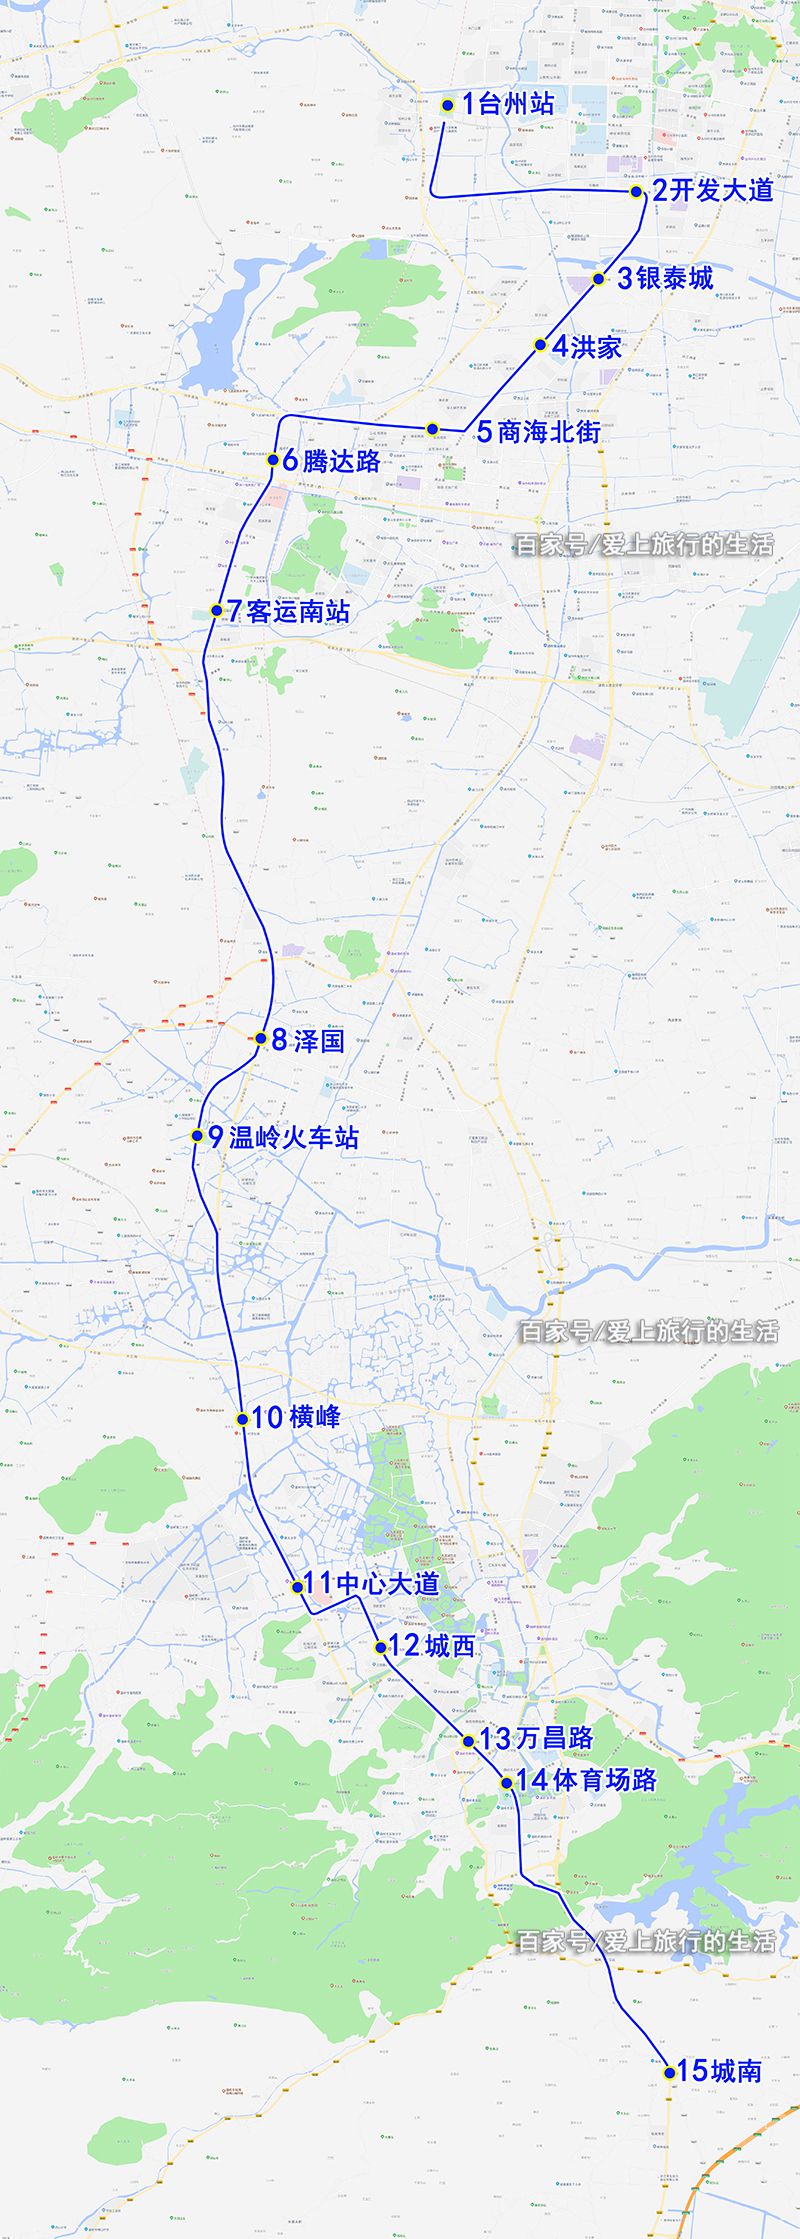 台州市域铁路,温岭s1轻轨,15个站点最详细位置分布图